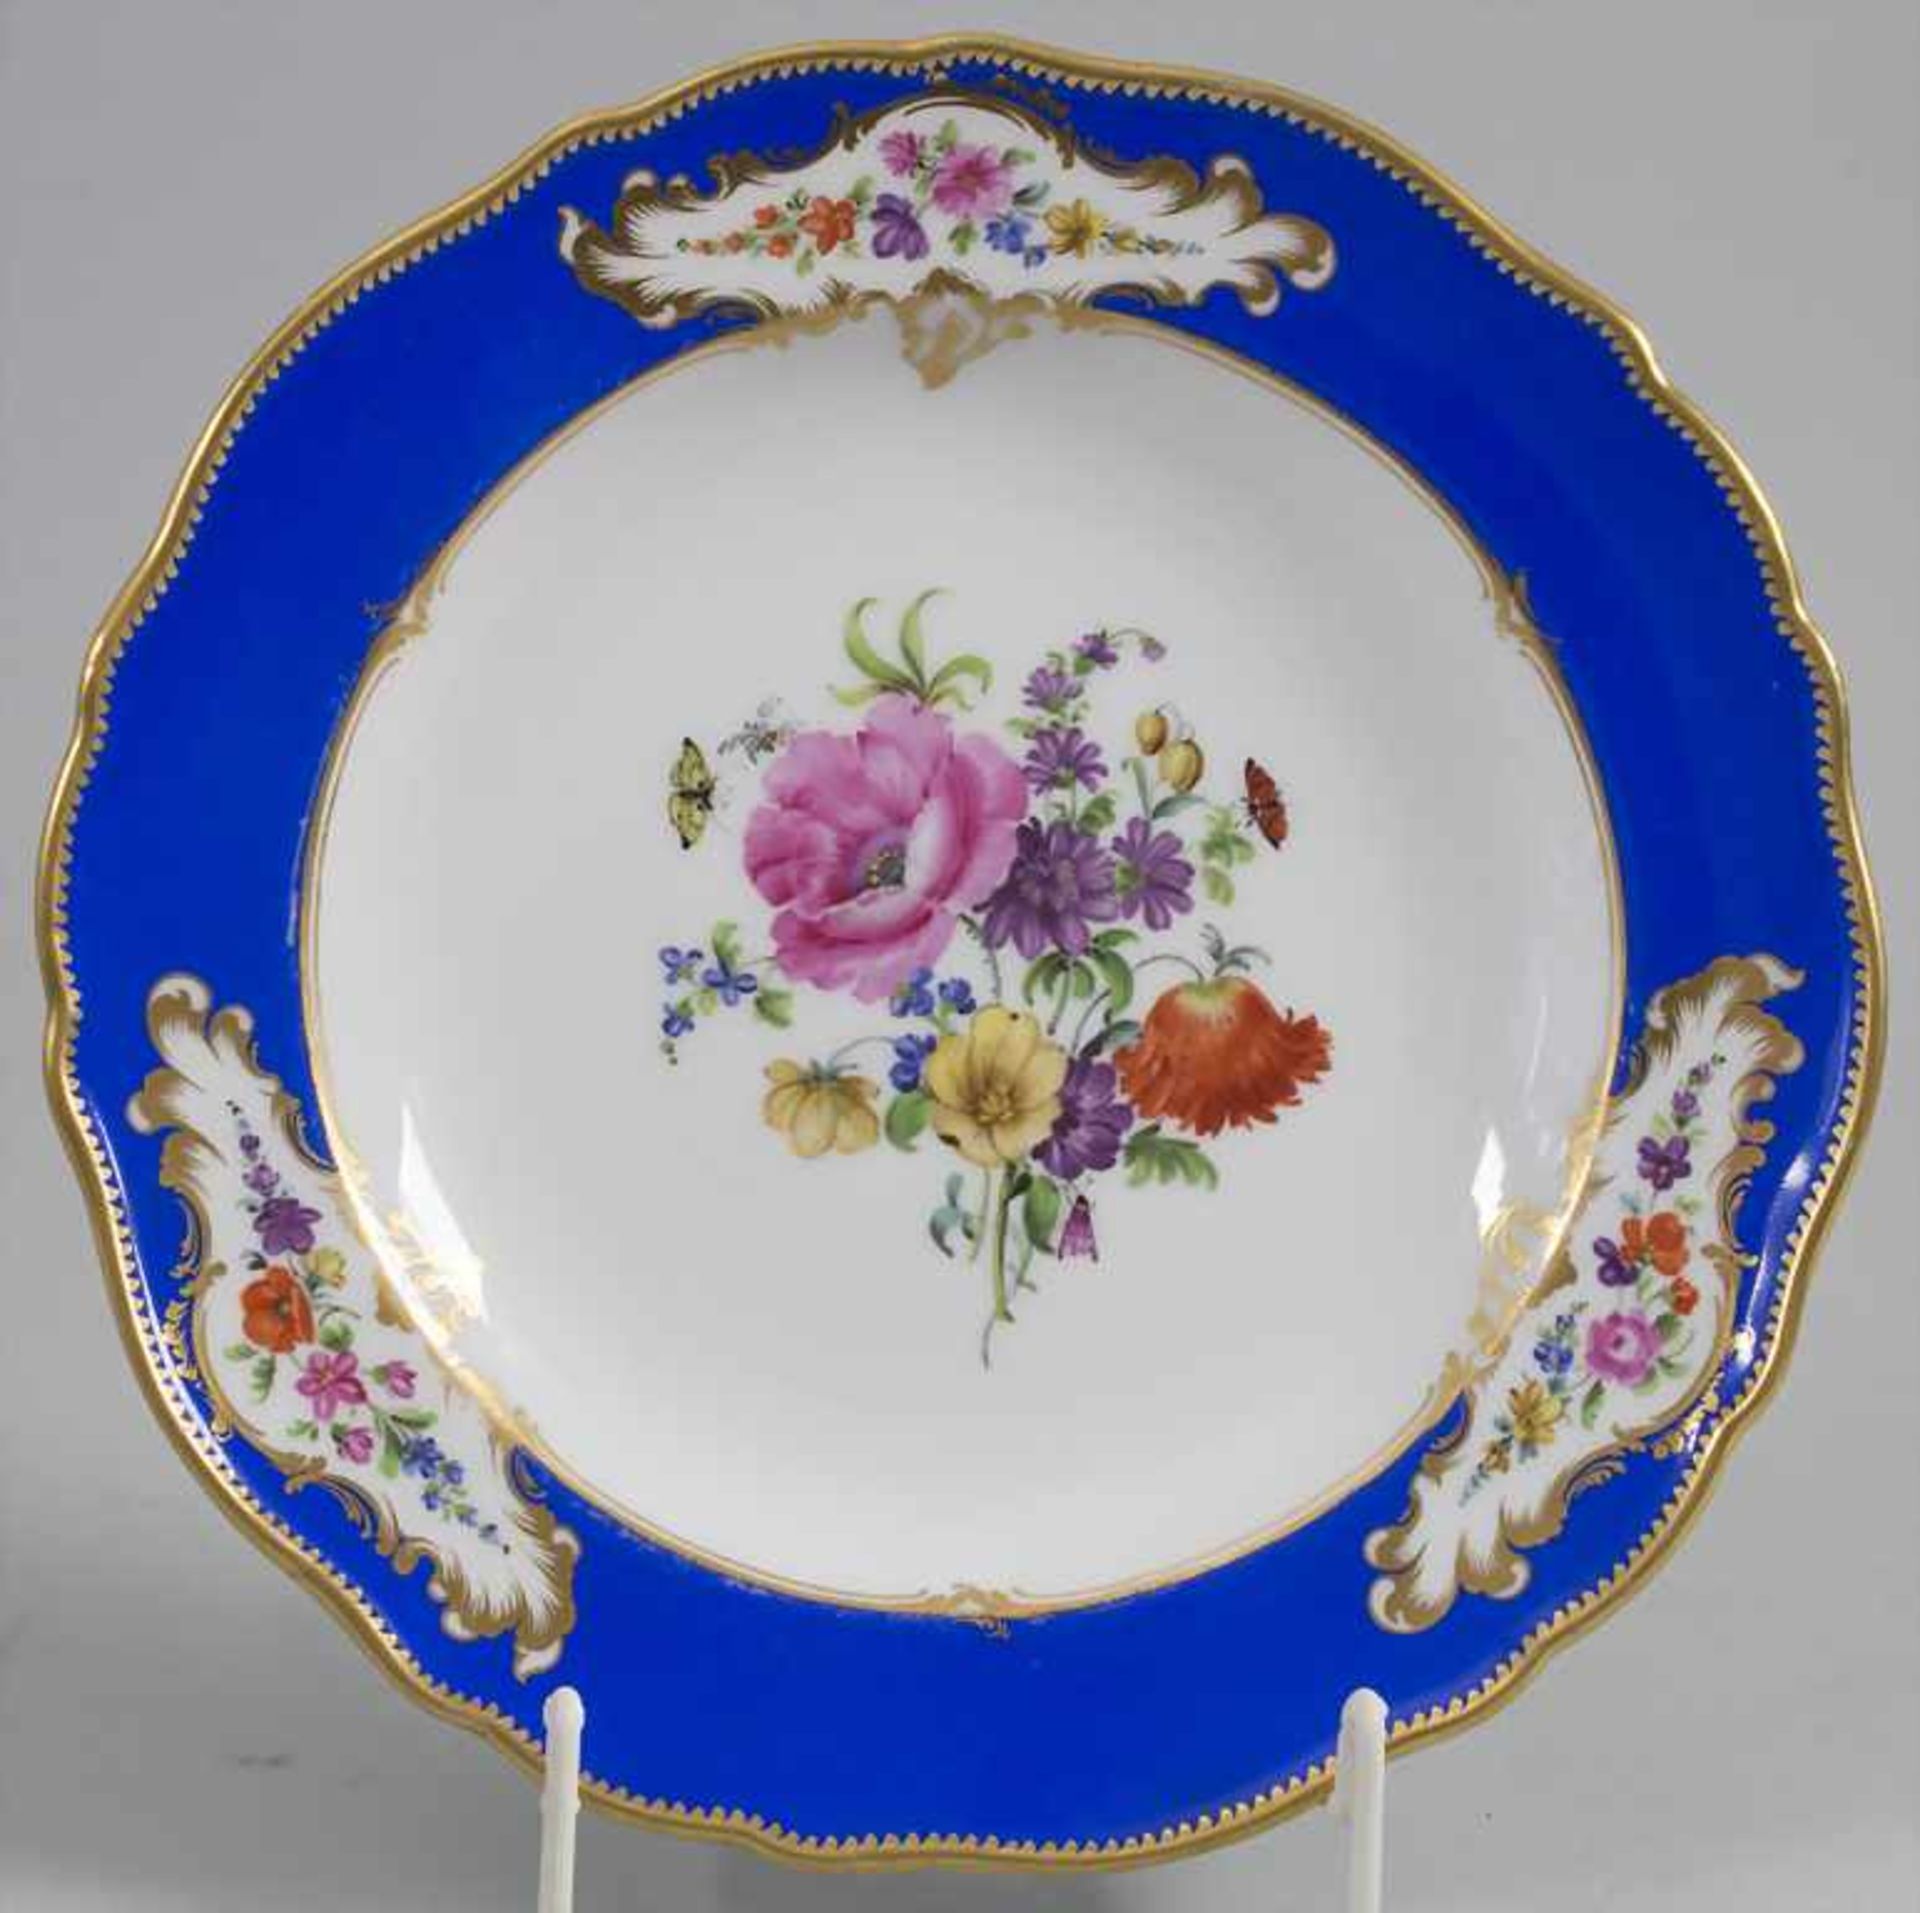 Zierteller / A decorative plate, Meissen, 19. Jh.Material: Porzellan, polychrom bemalt